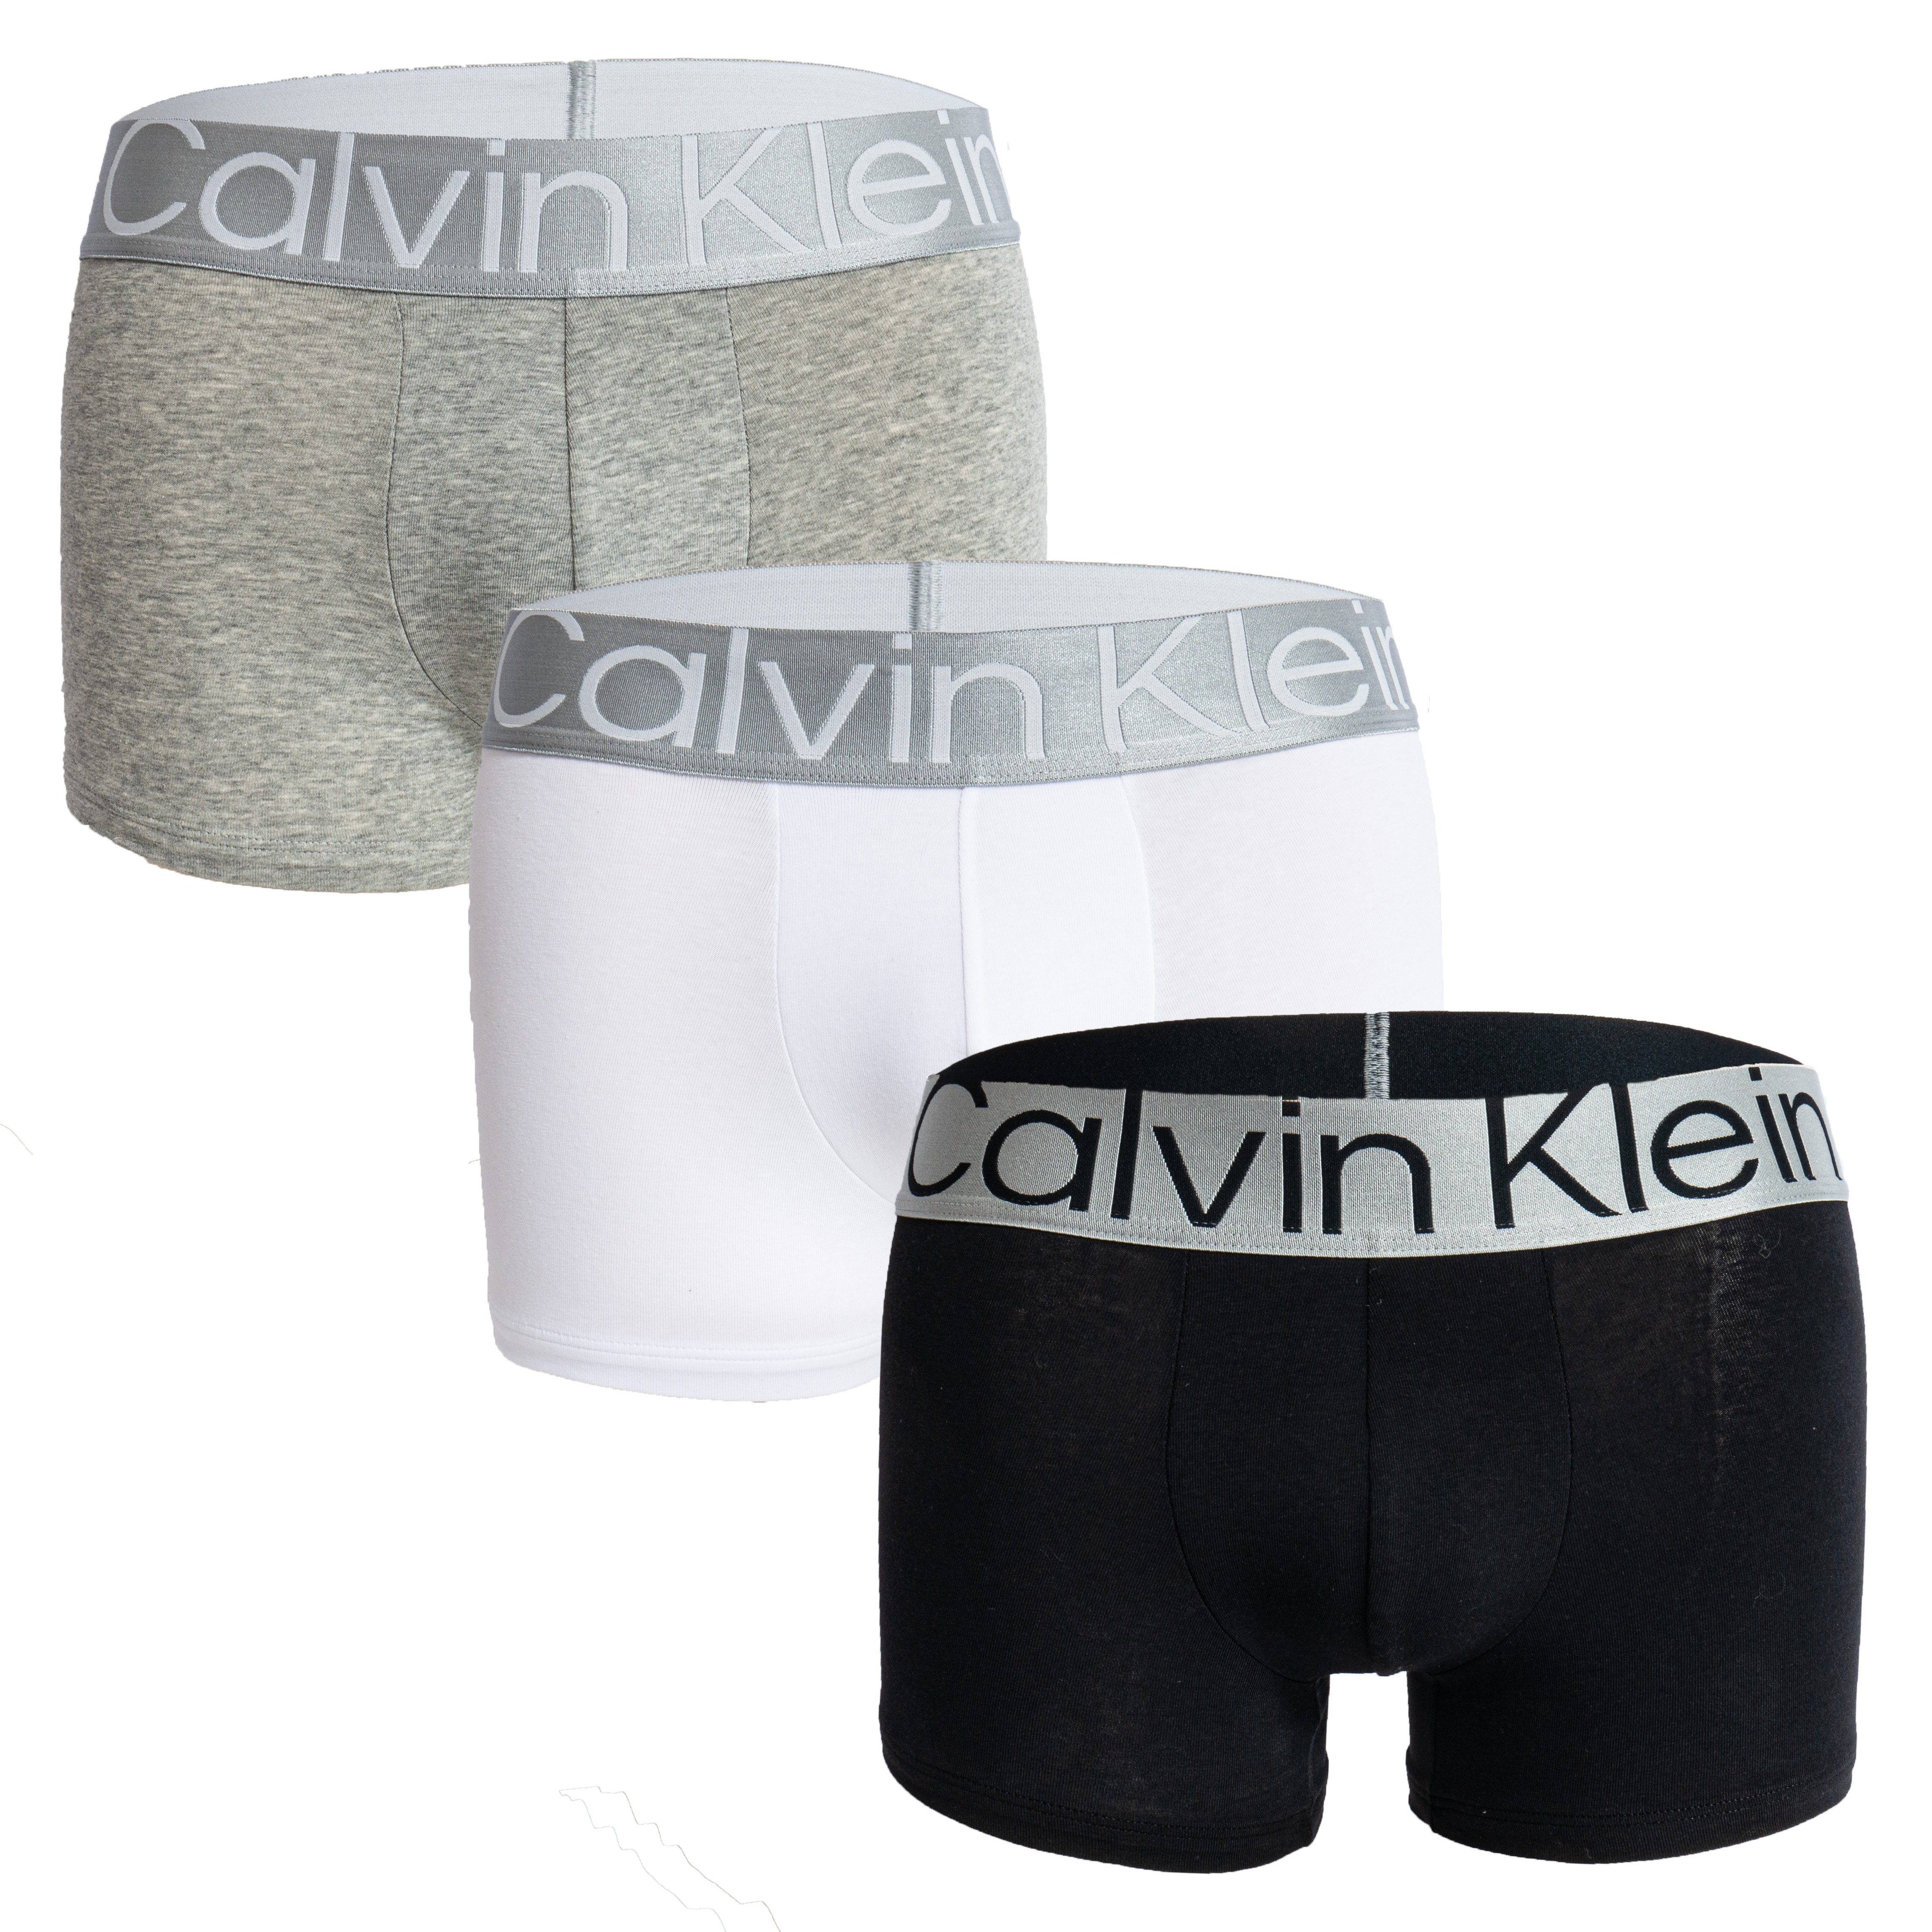 Boxer Calvin Klein Steel Cotton - grey black white (Set of 3)